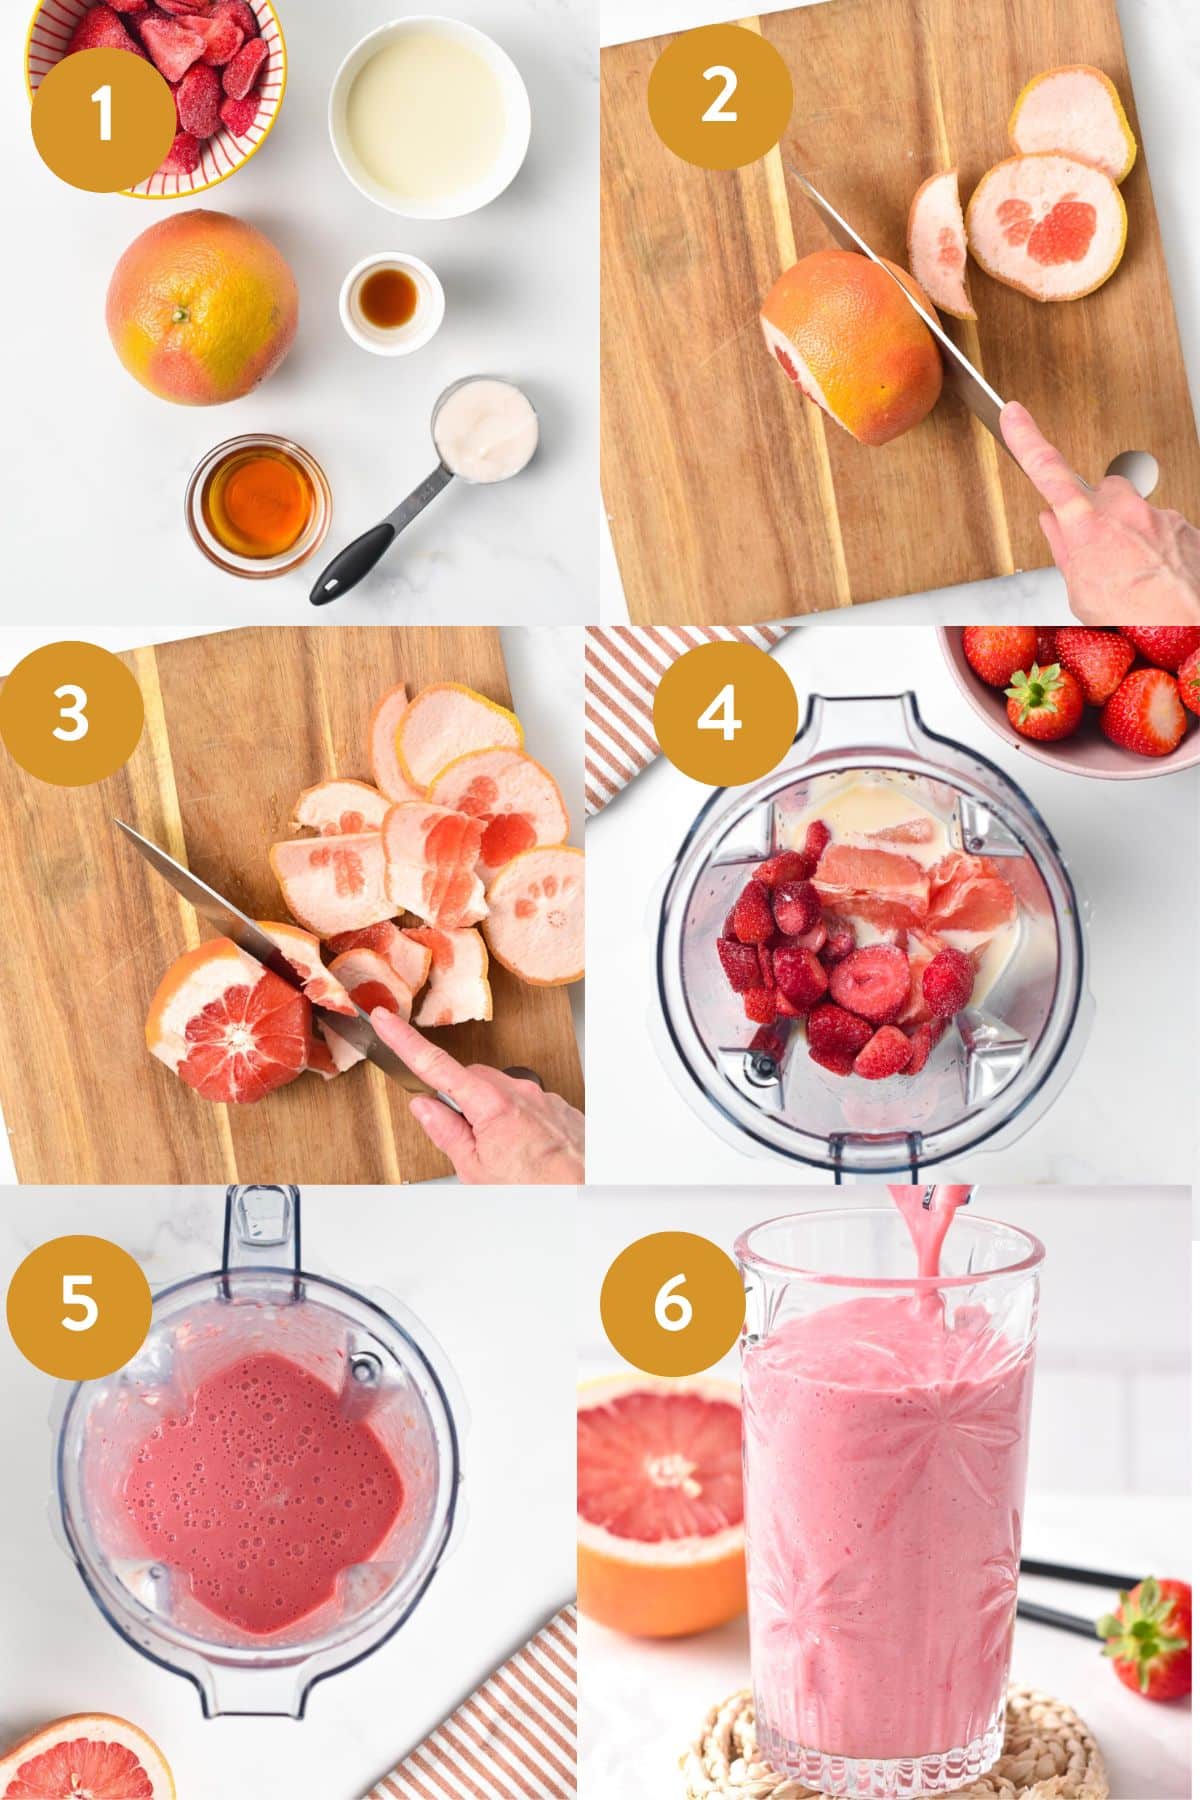 How to make Grapefruit Smoothie